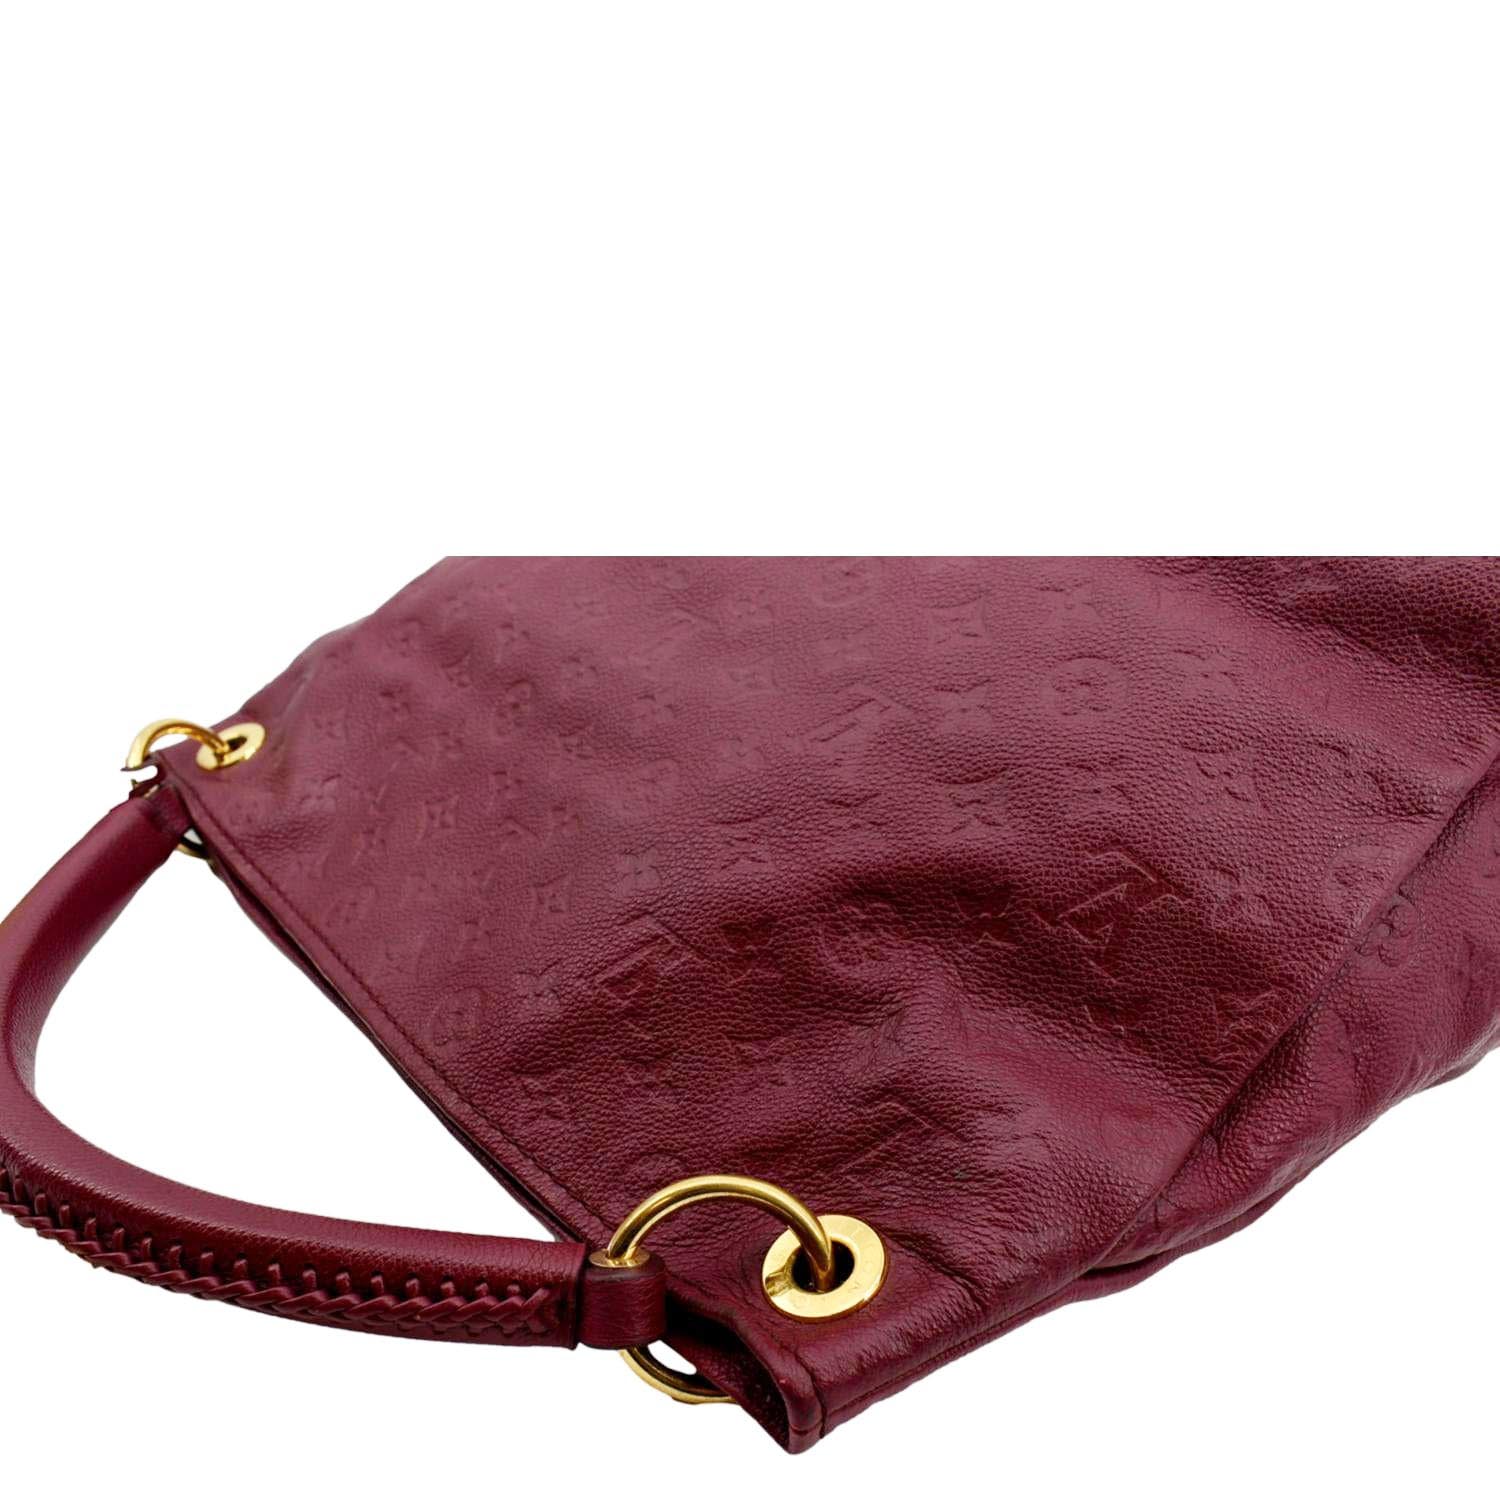 Authentic Louis Vuitton Empreinte Artsy MM in Red Hobo Shoulder Handbag